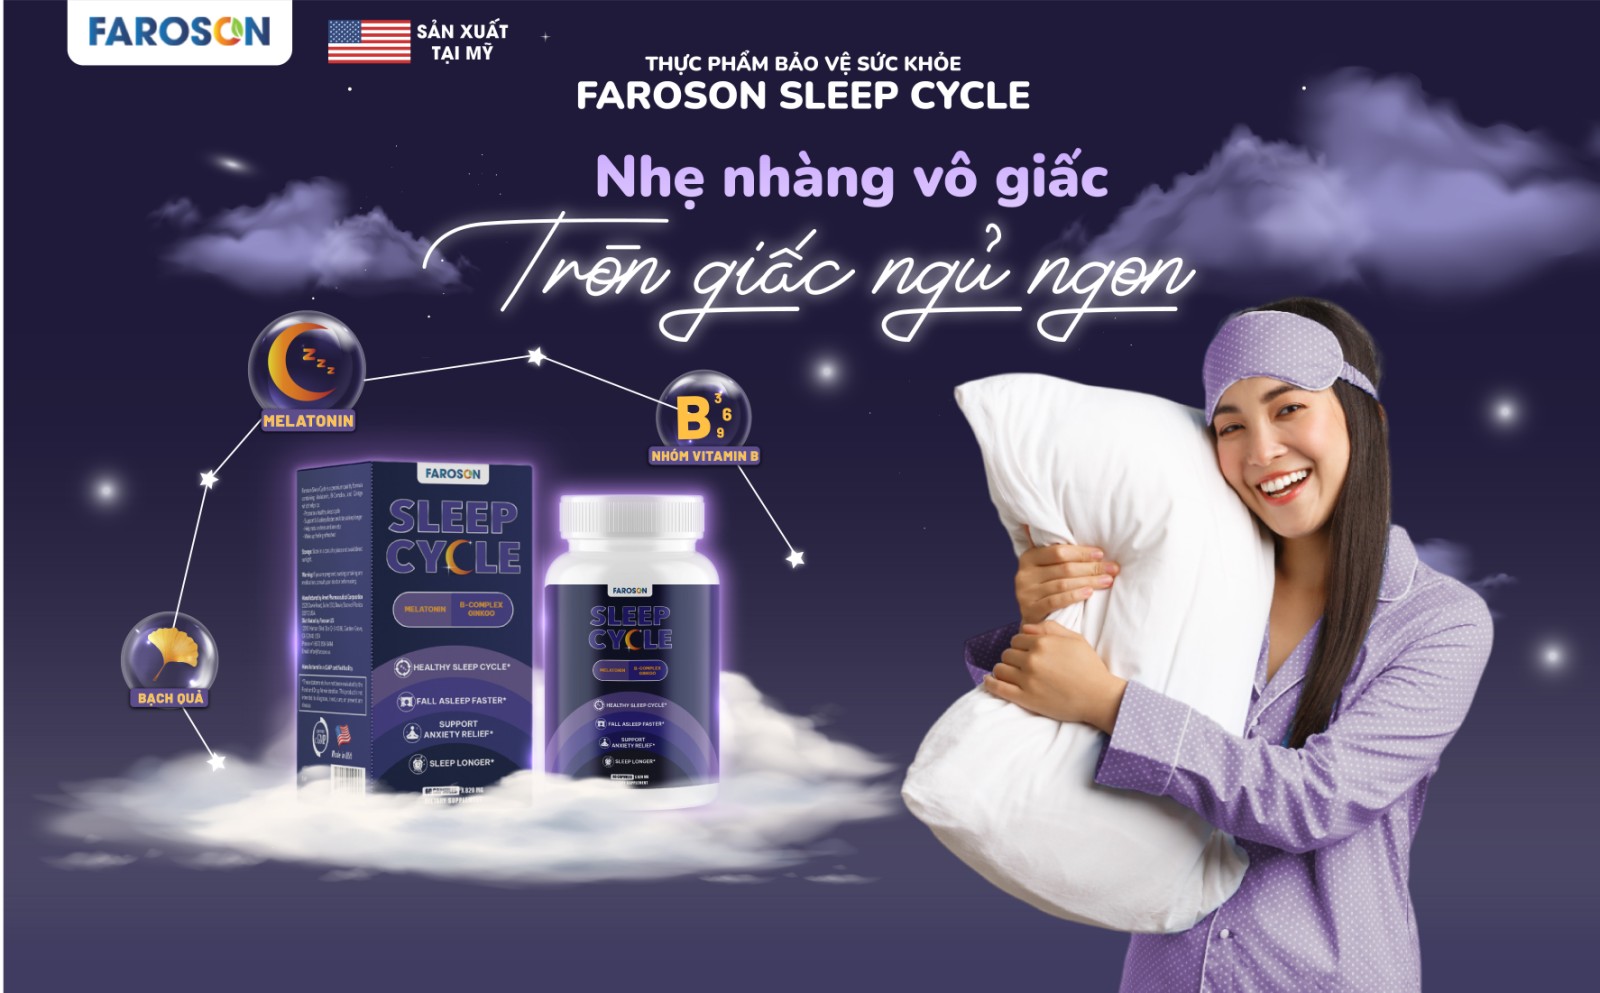 Trải nghiệm chu kỳ giấc ngủ toàn diện với sản phẩm mới Faroson Sleep Cycle - Ảnh 1.